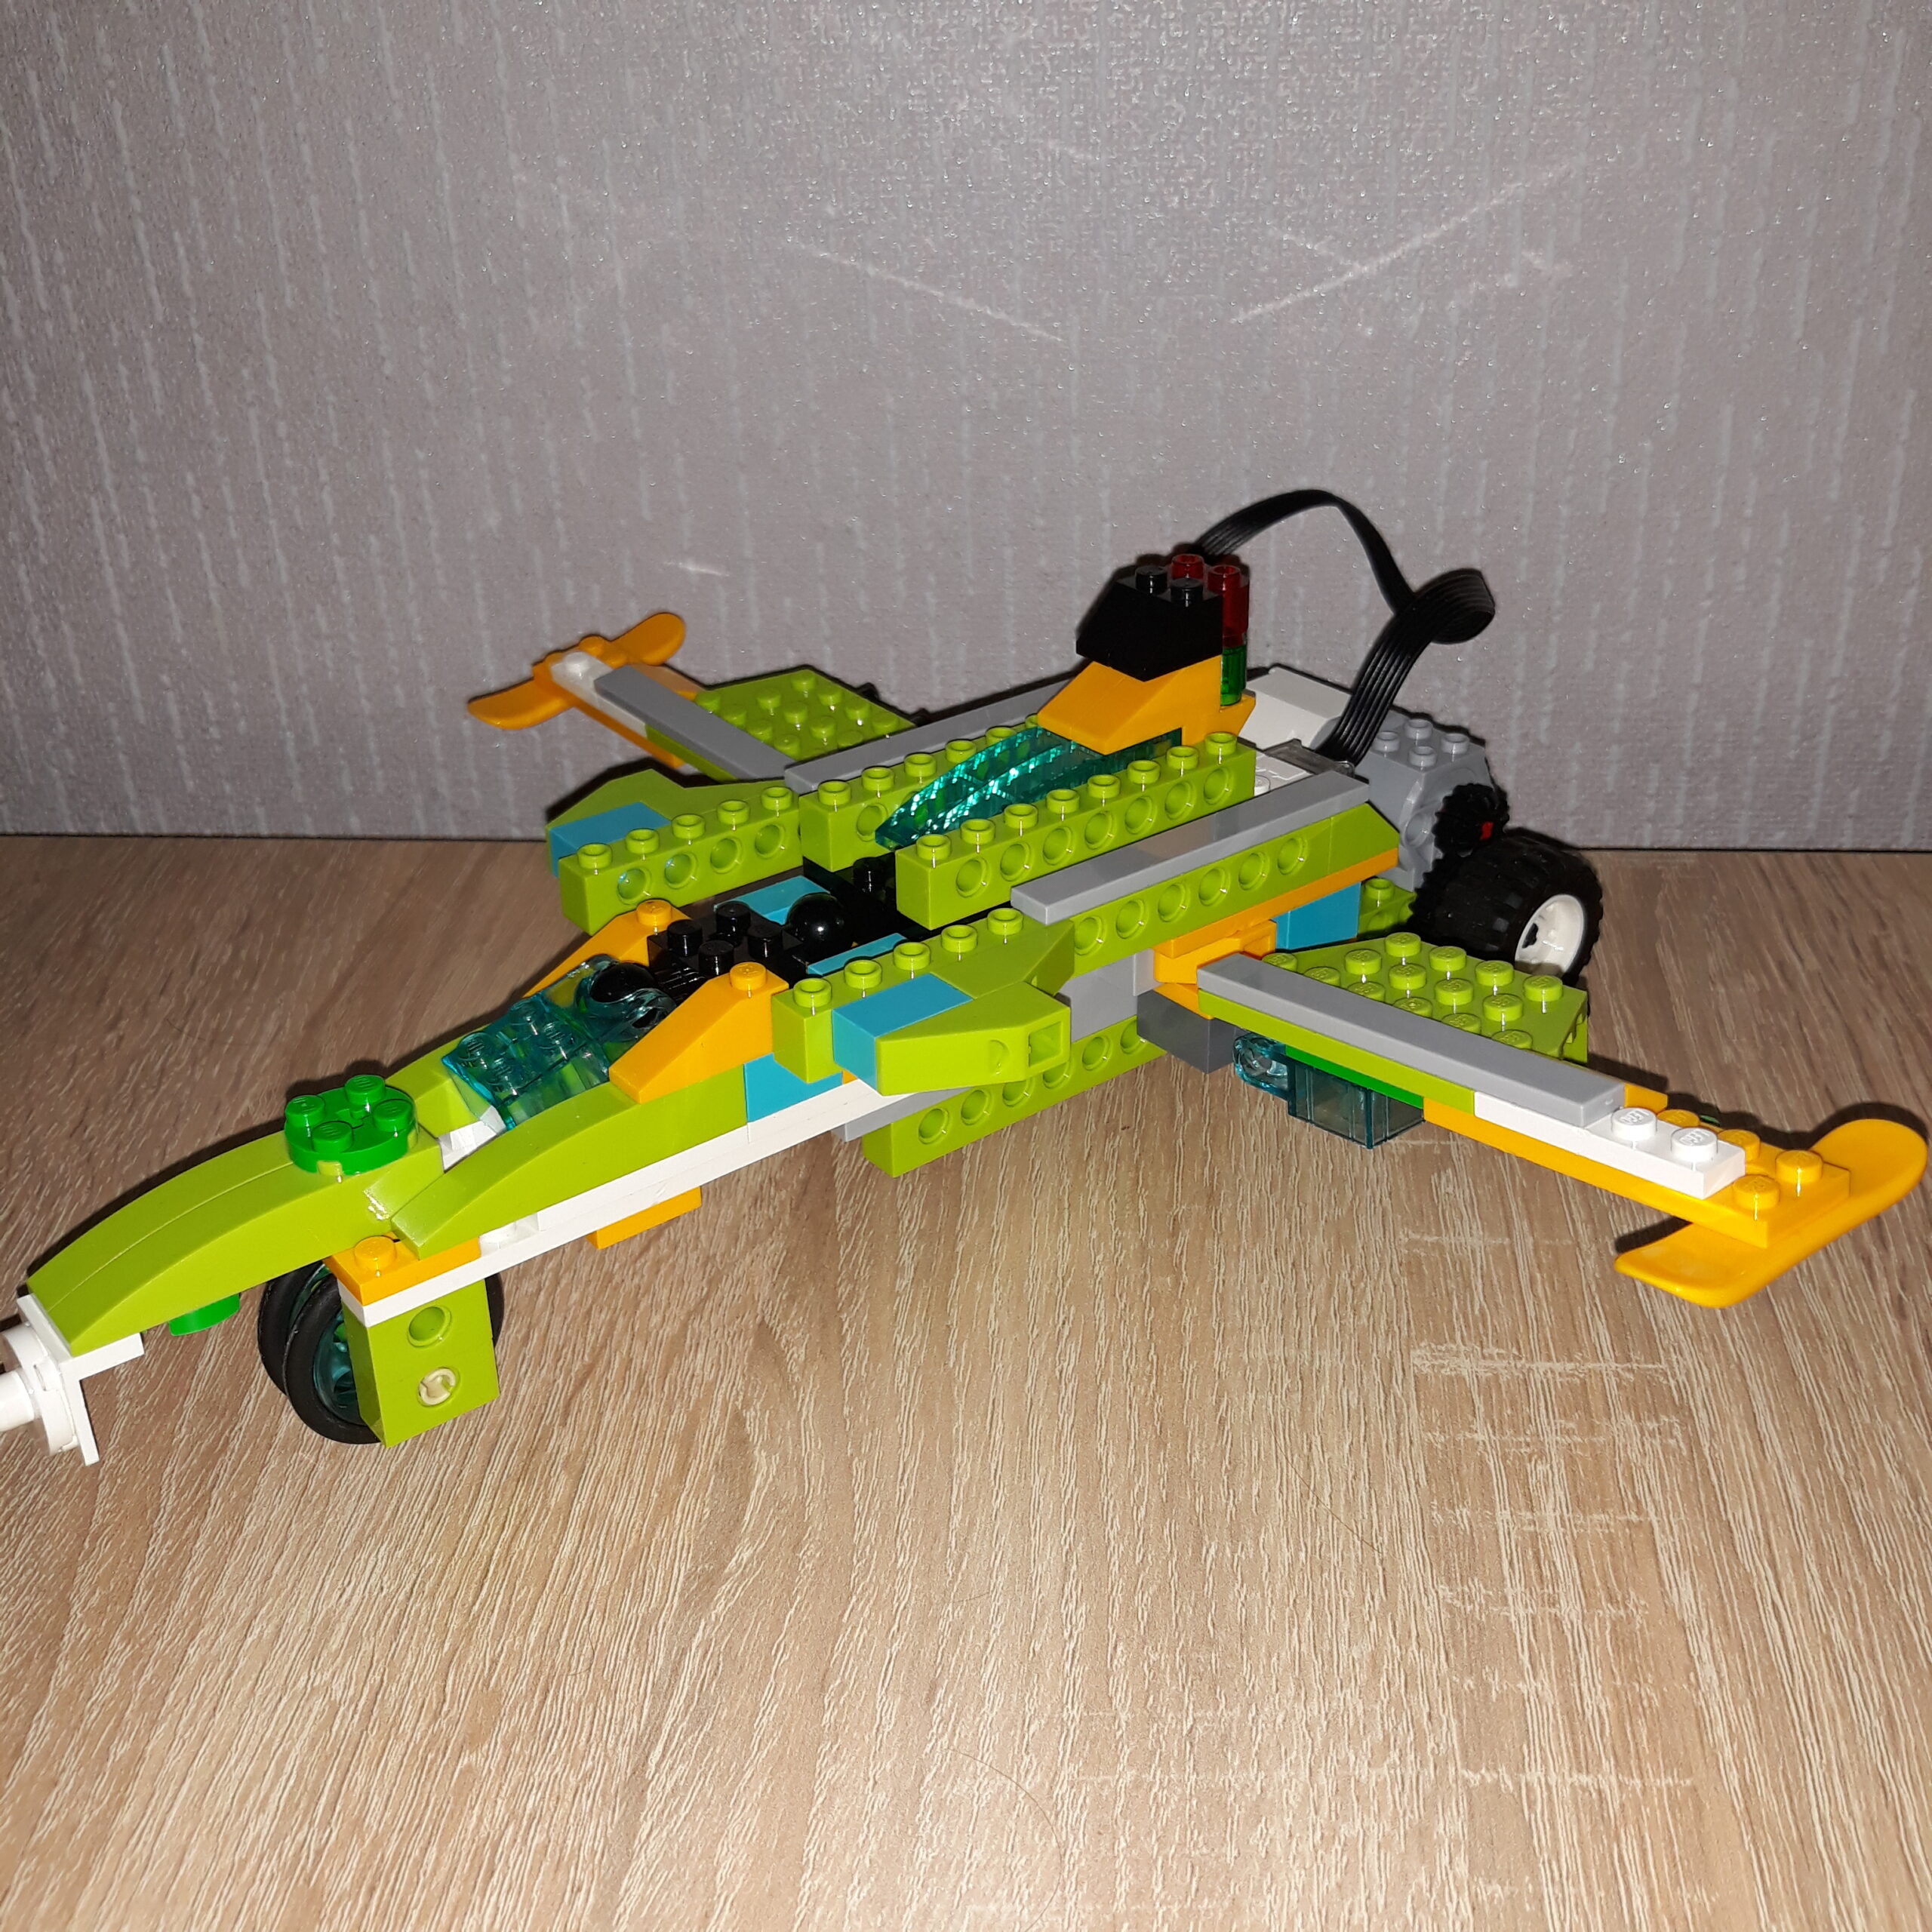 Итоговая схема сборки из набора LEGO Education WeDo 2.0 Самолет Jet Fighter